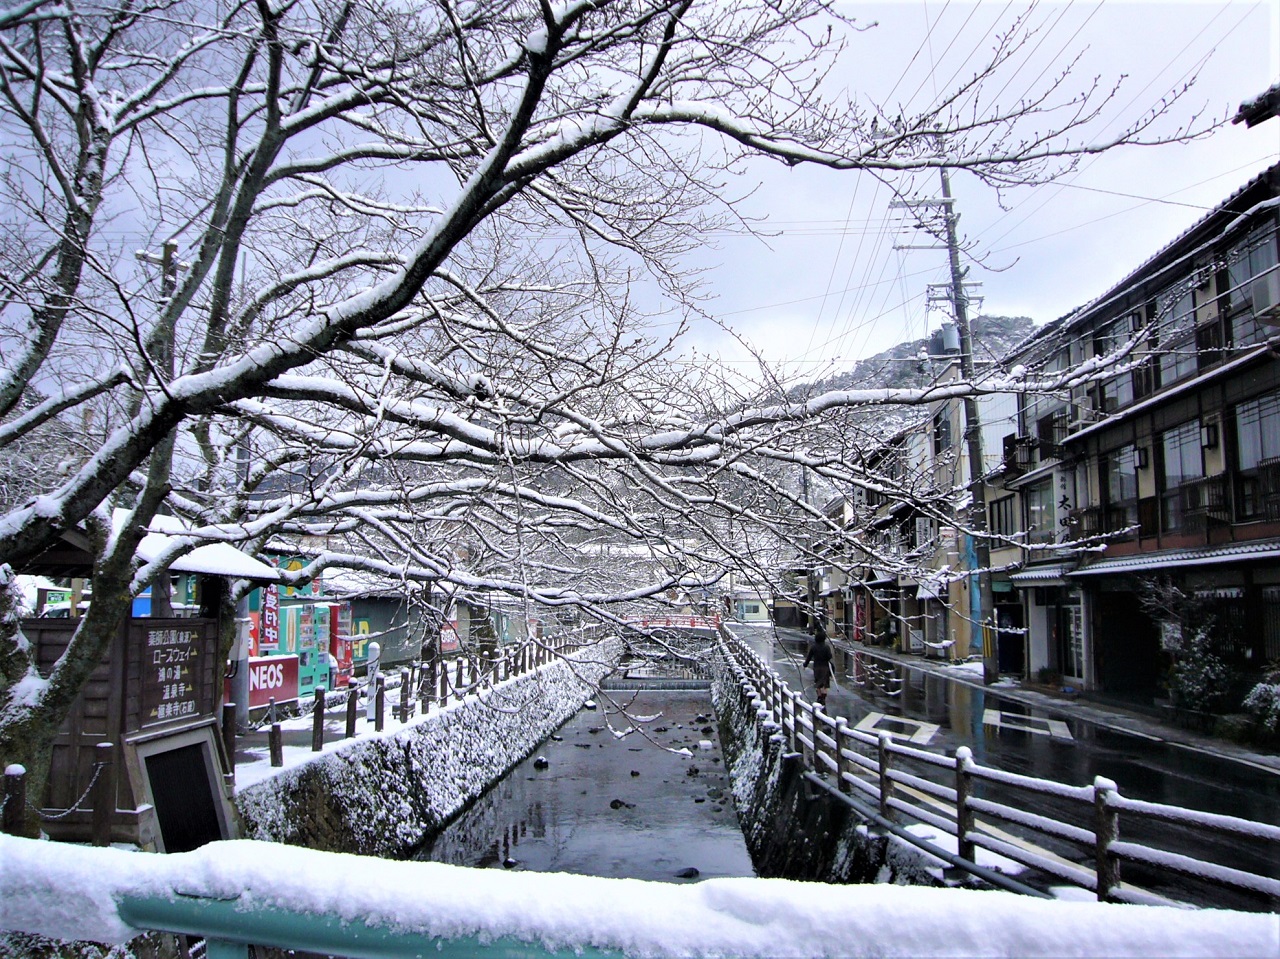 หมู่บ้าน บ่อน้ำพุร้อน Kinosaki Winter